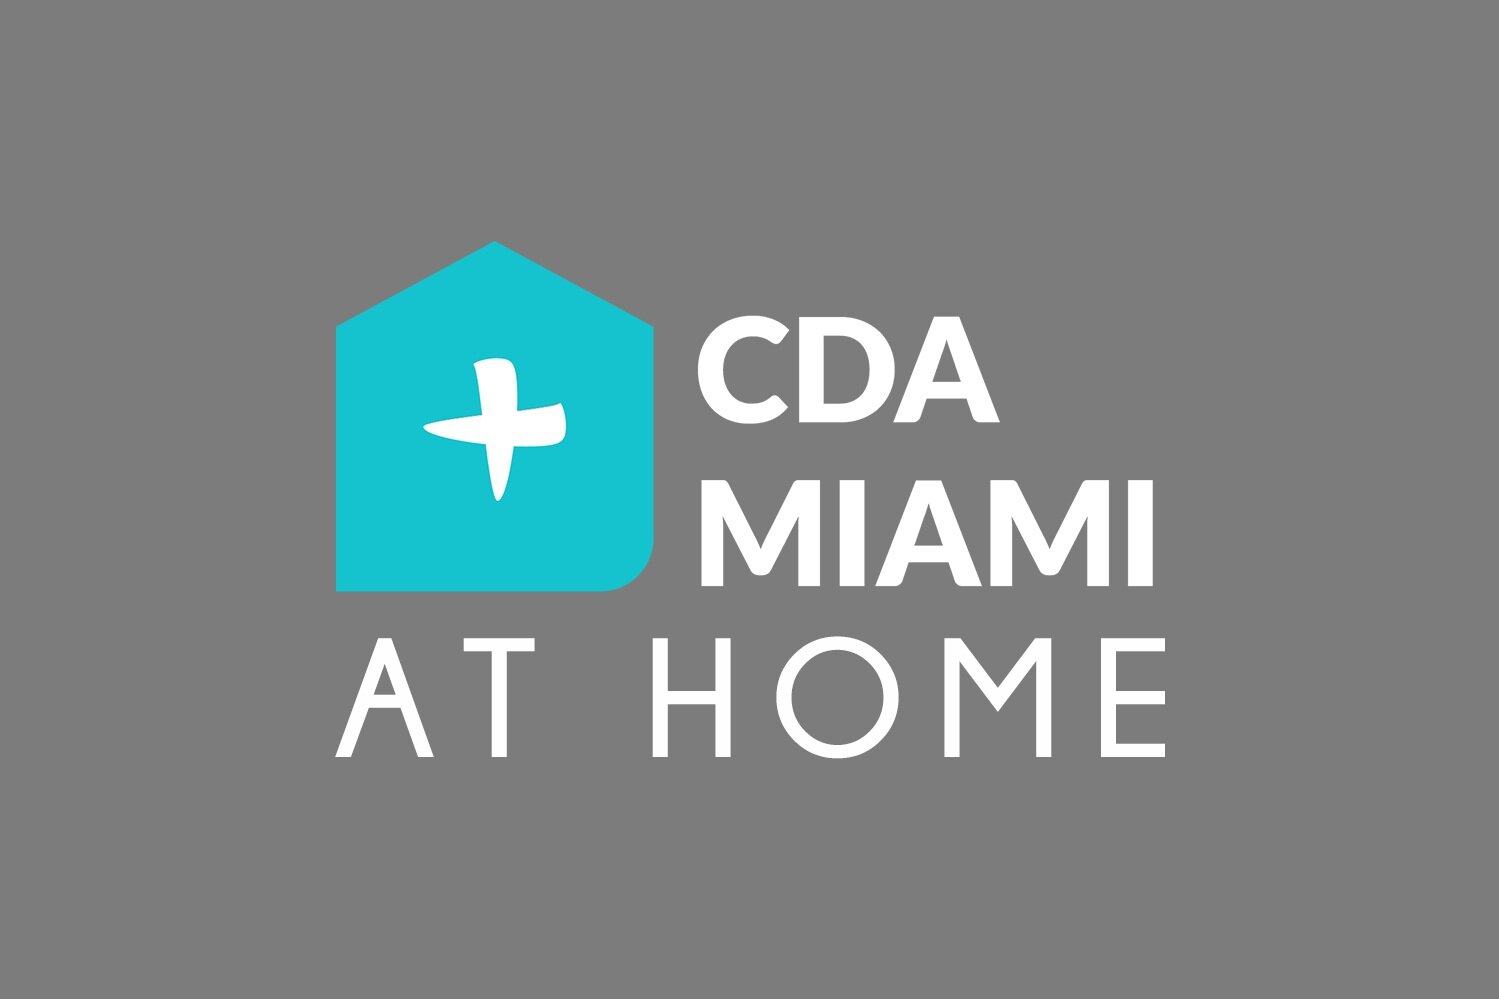 CDA Miami At Home (Copy)